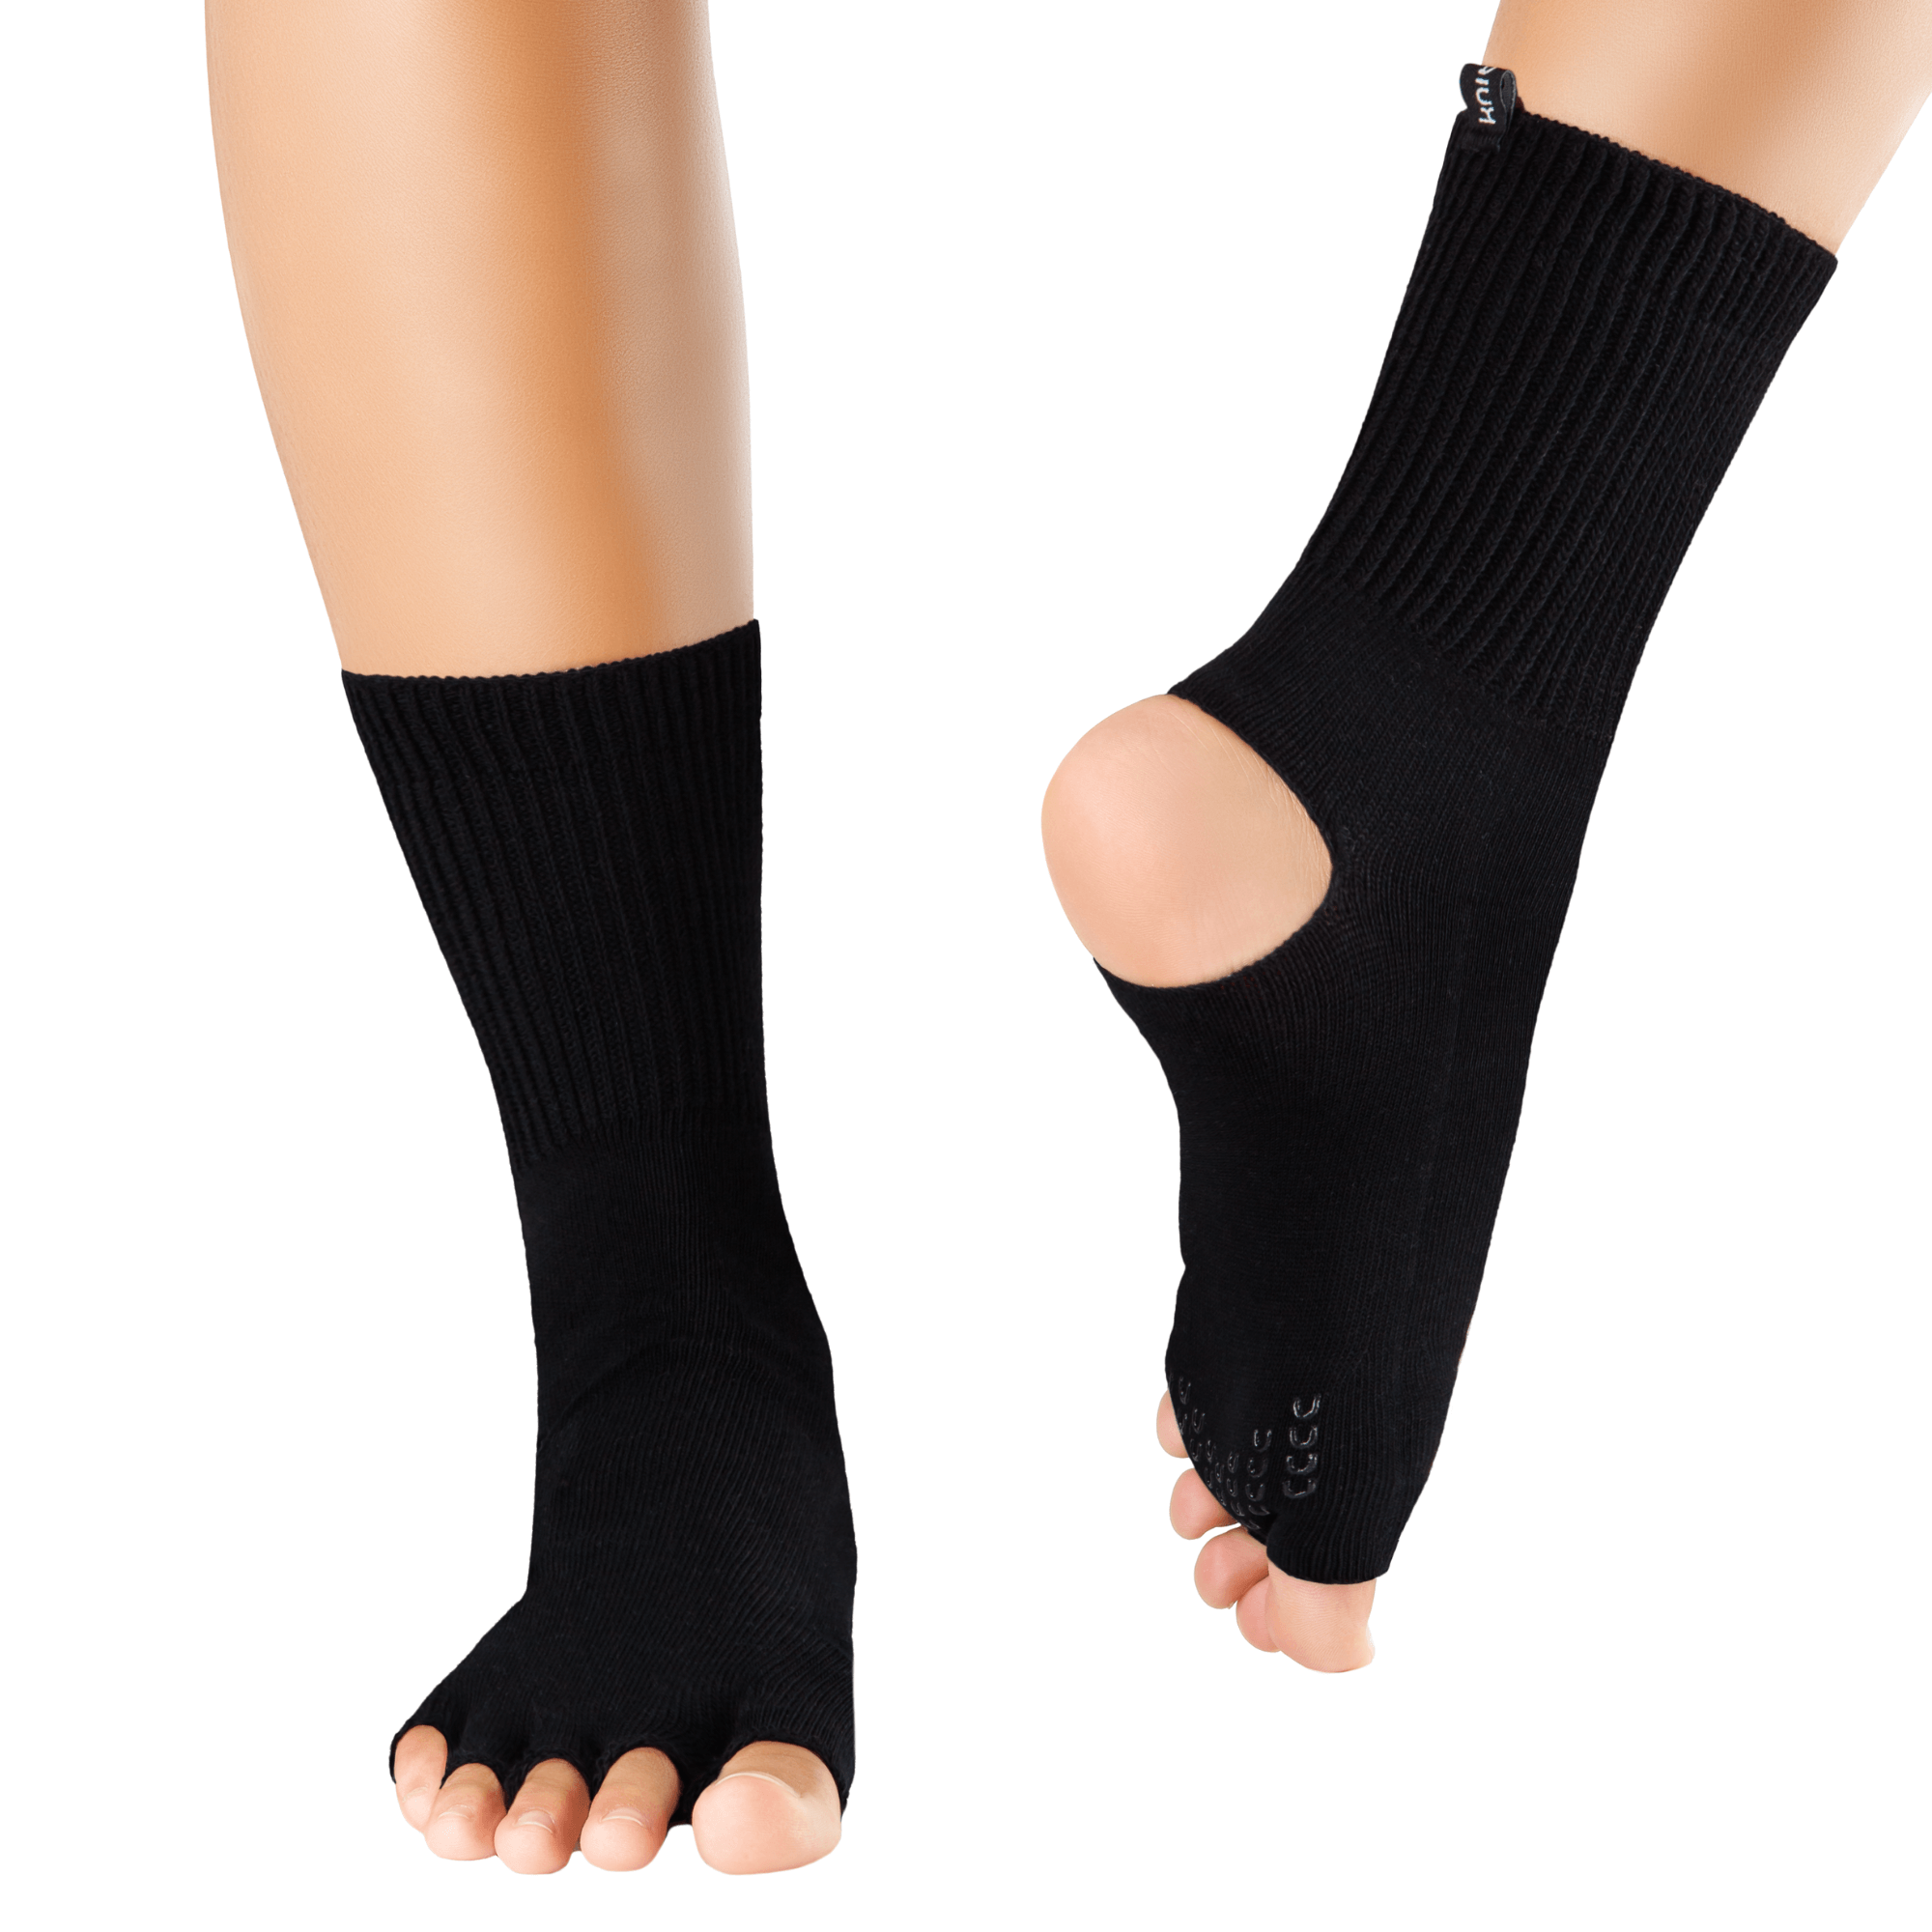 Knitido Plus Flow Nana Yoga Cuffs - Knitido®. The toe socks